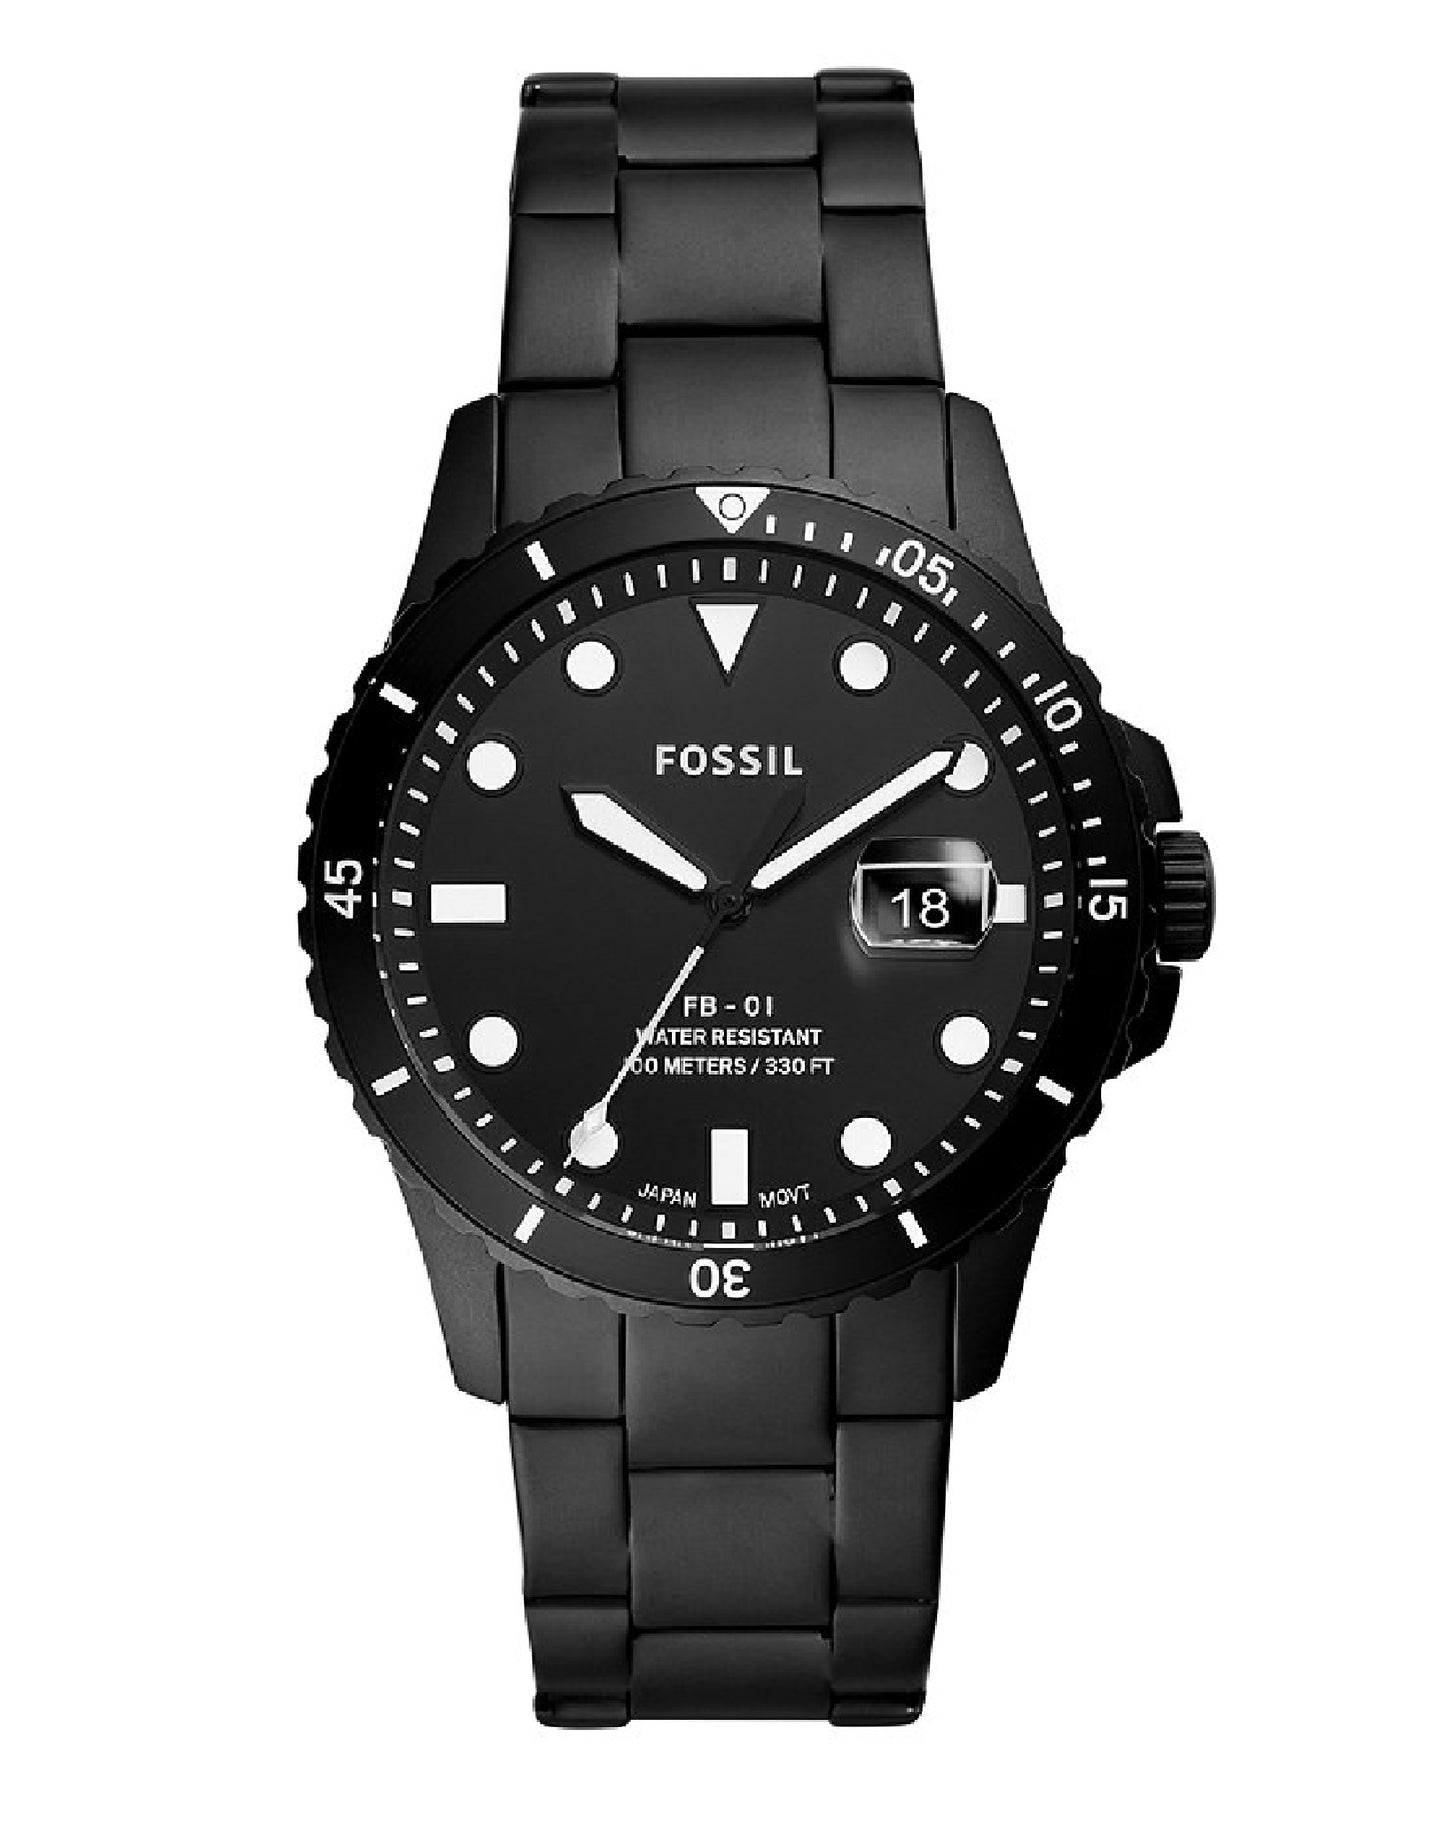 Fossil FS5659 Fossil FB-01 Fossil